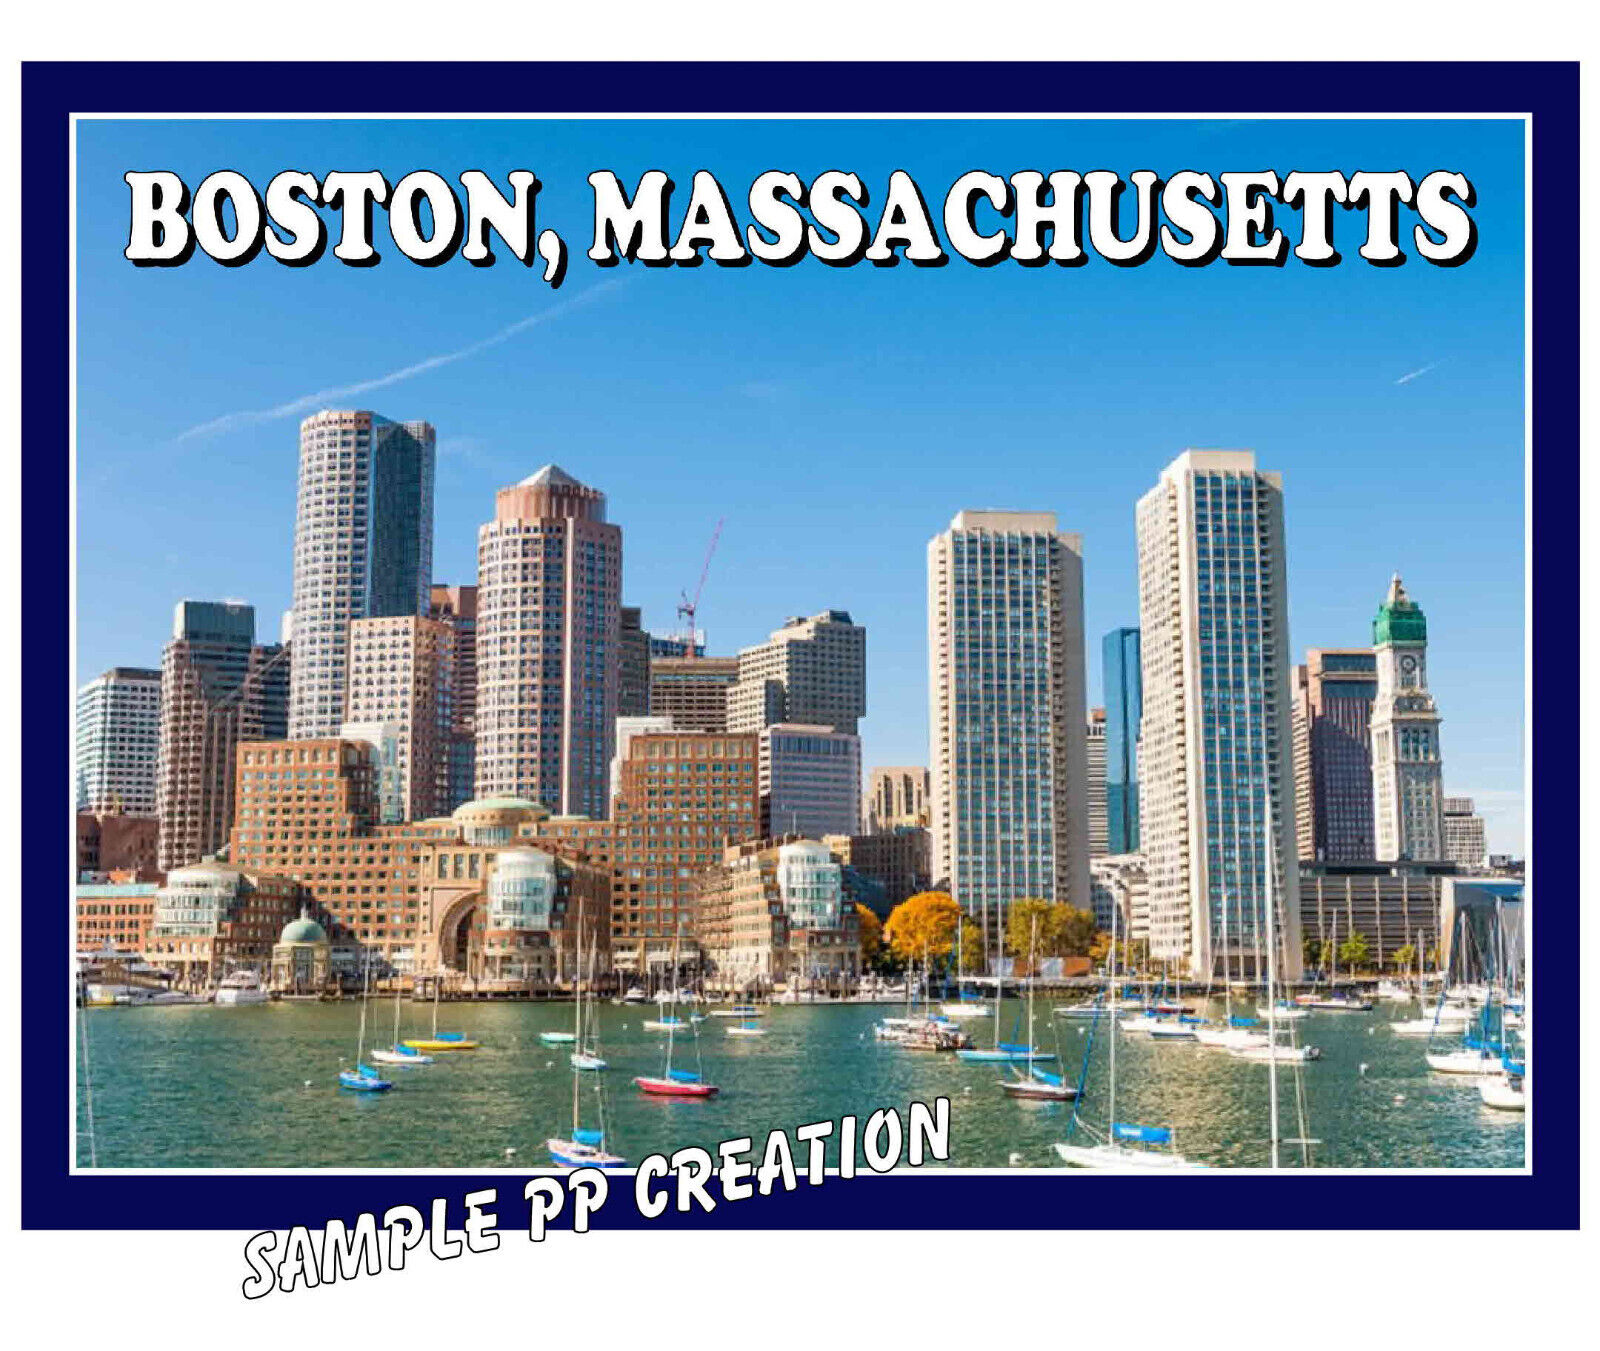 BOSTON MASSACHUSETTS photo fridge MAGNET 4 X 3 inches TRAVEL